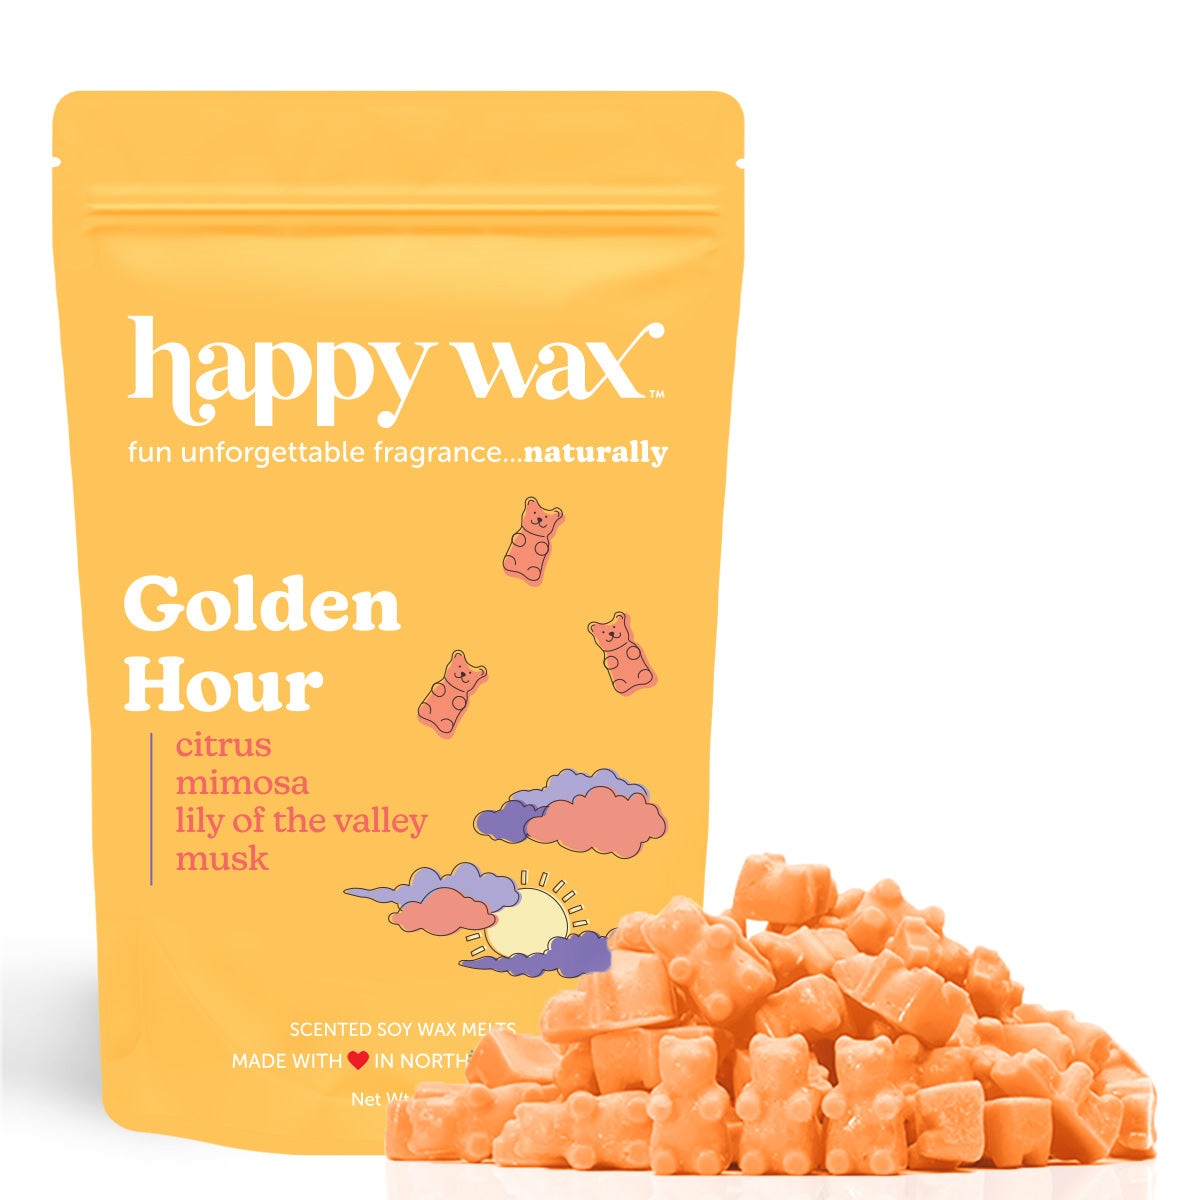 Golden Hour Wax Melts